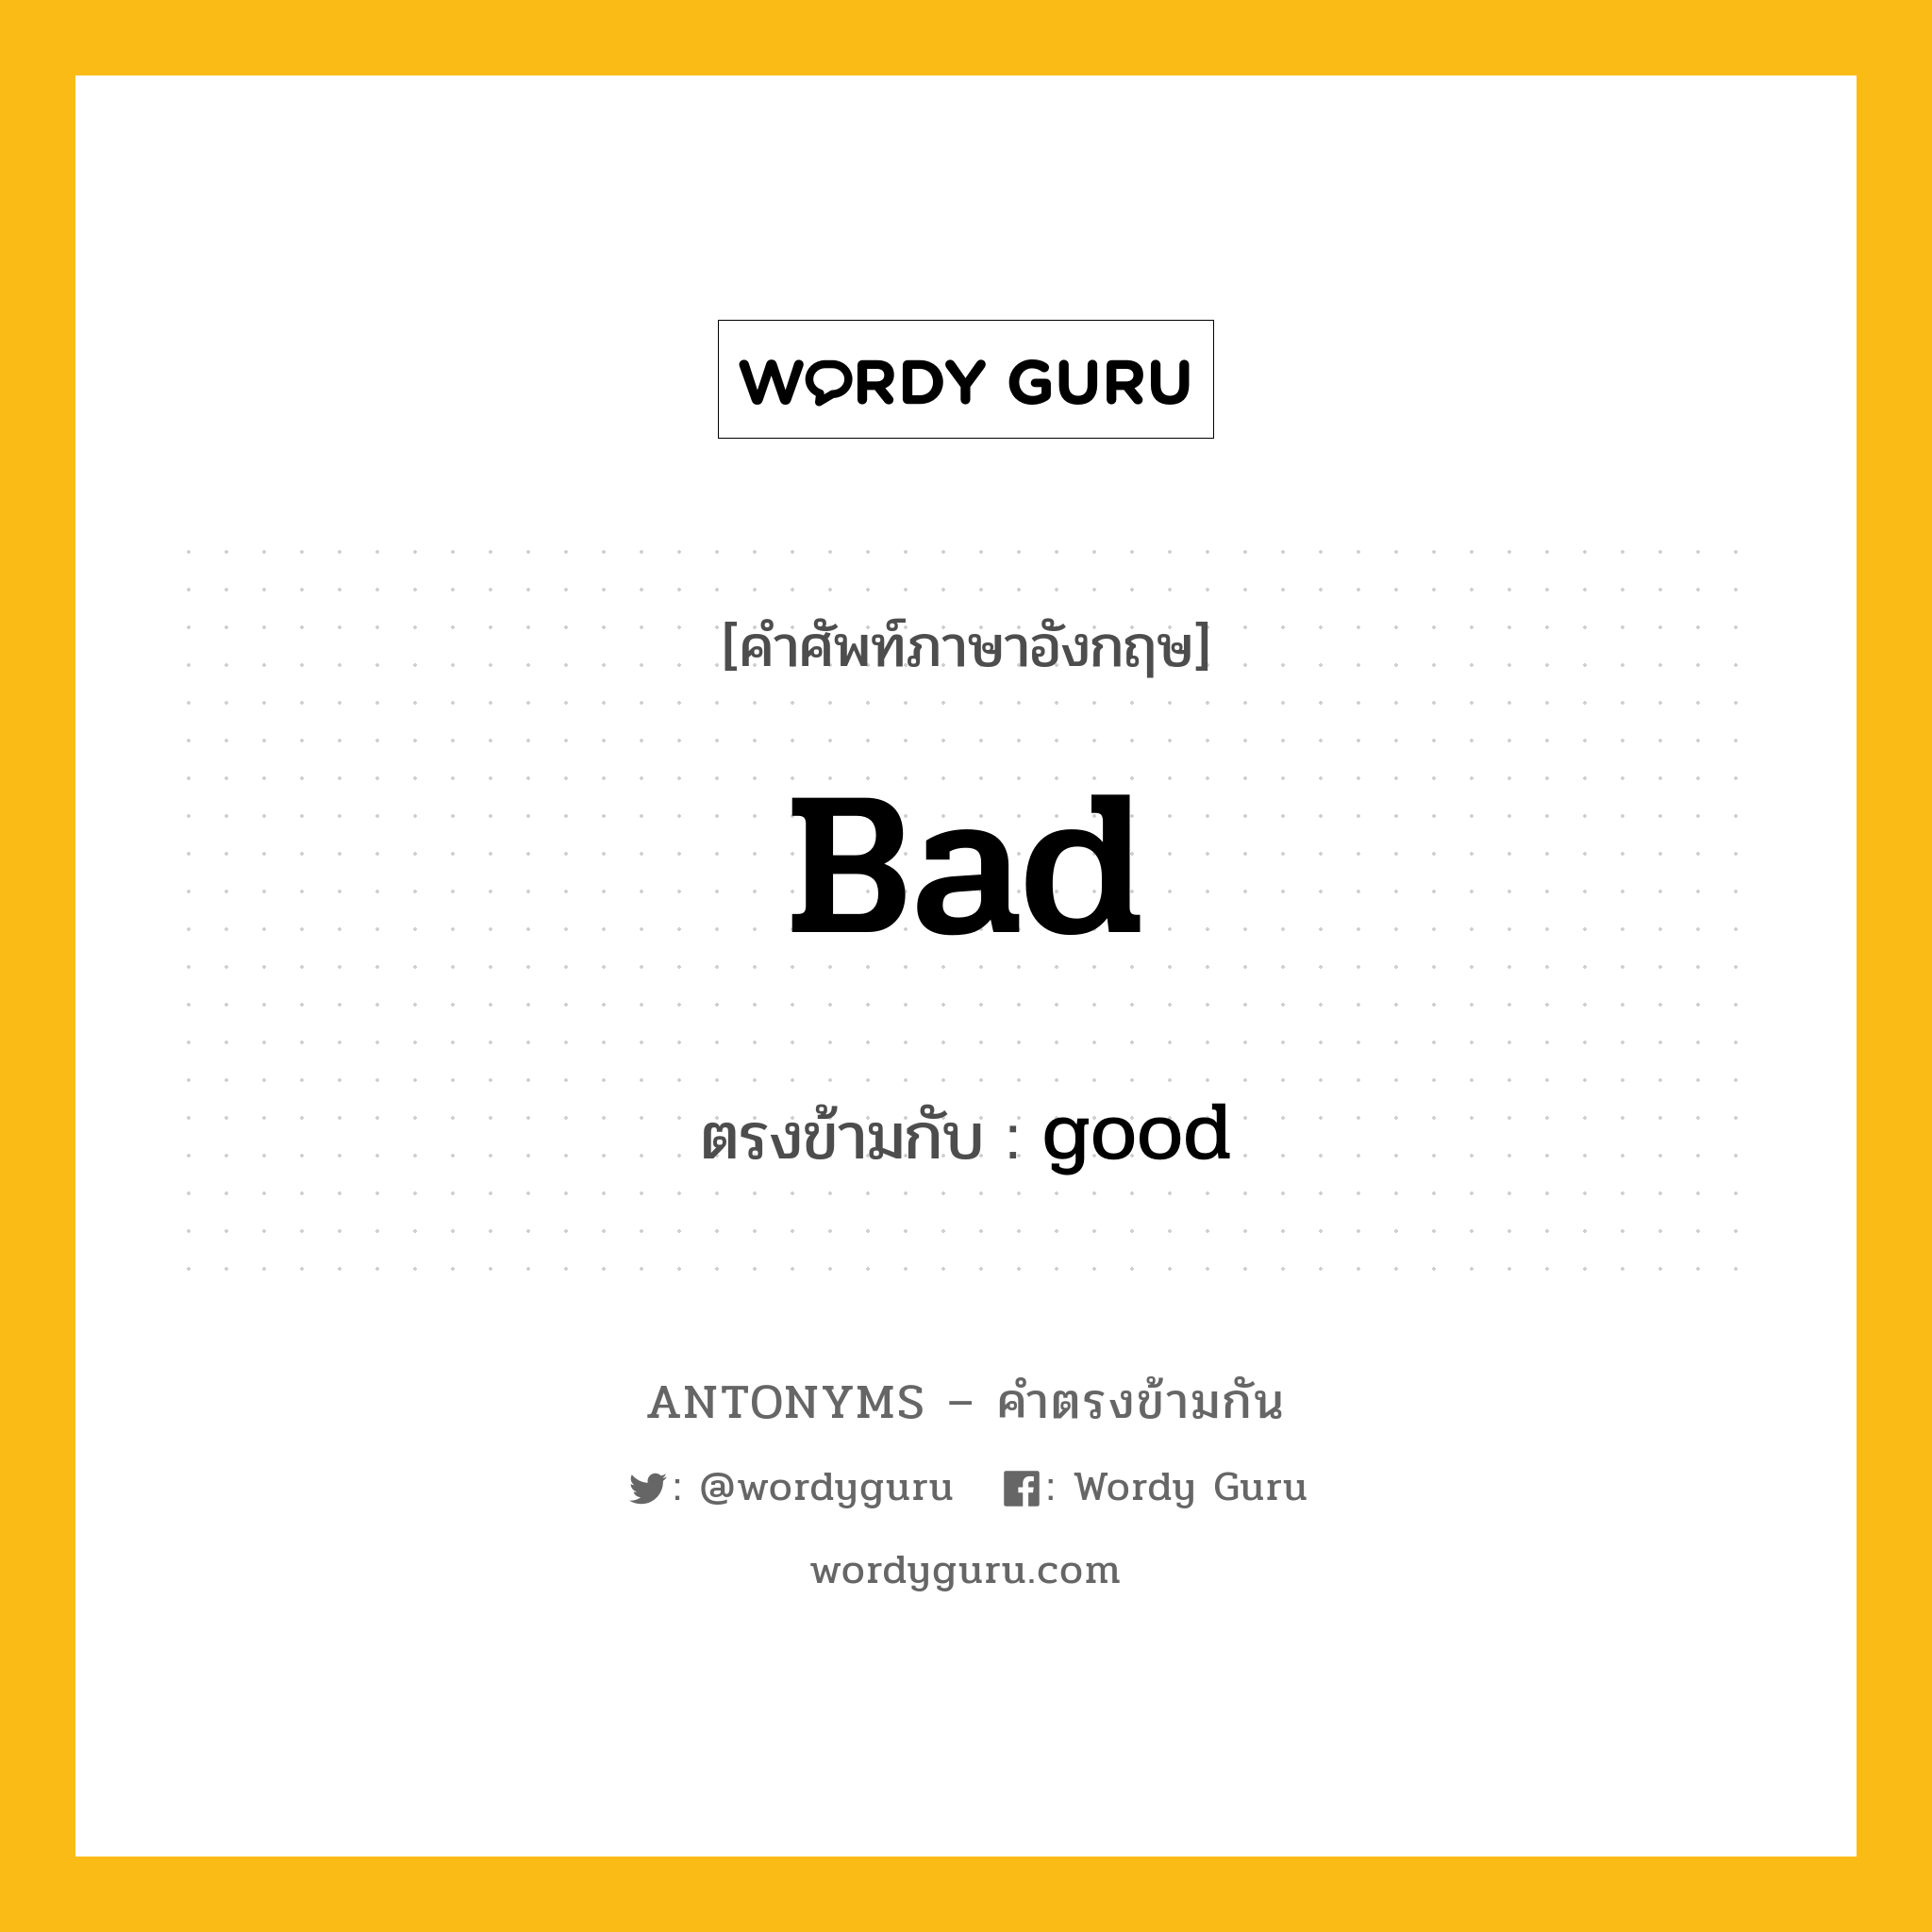 bad เป็นคำตรงข้ามกับคำไหนบ้าง?, คำศัพท์ภาษาอังกฤษ bad ตรงข้ามกับ good หมวด good